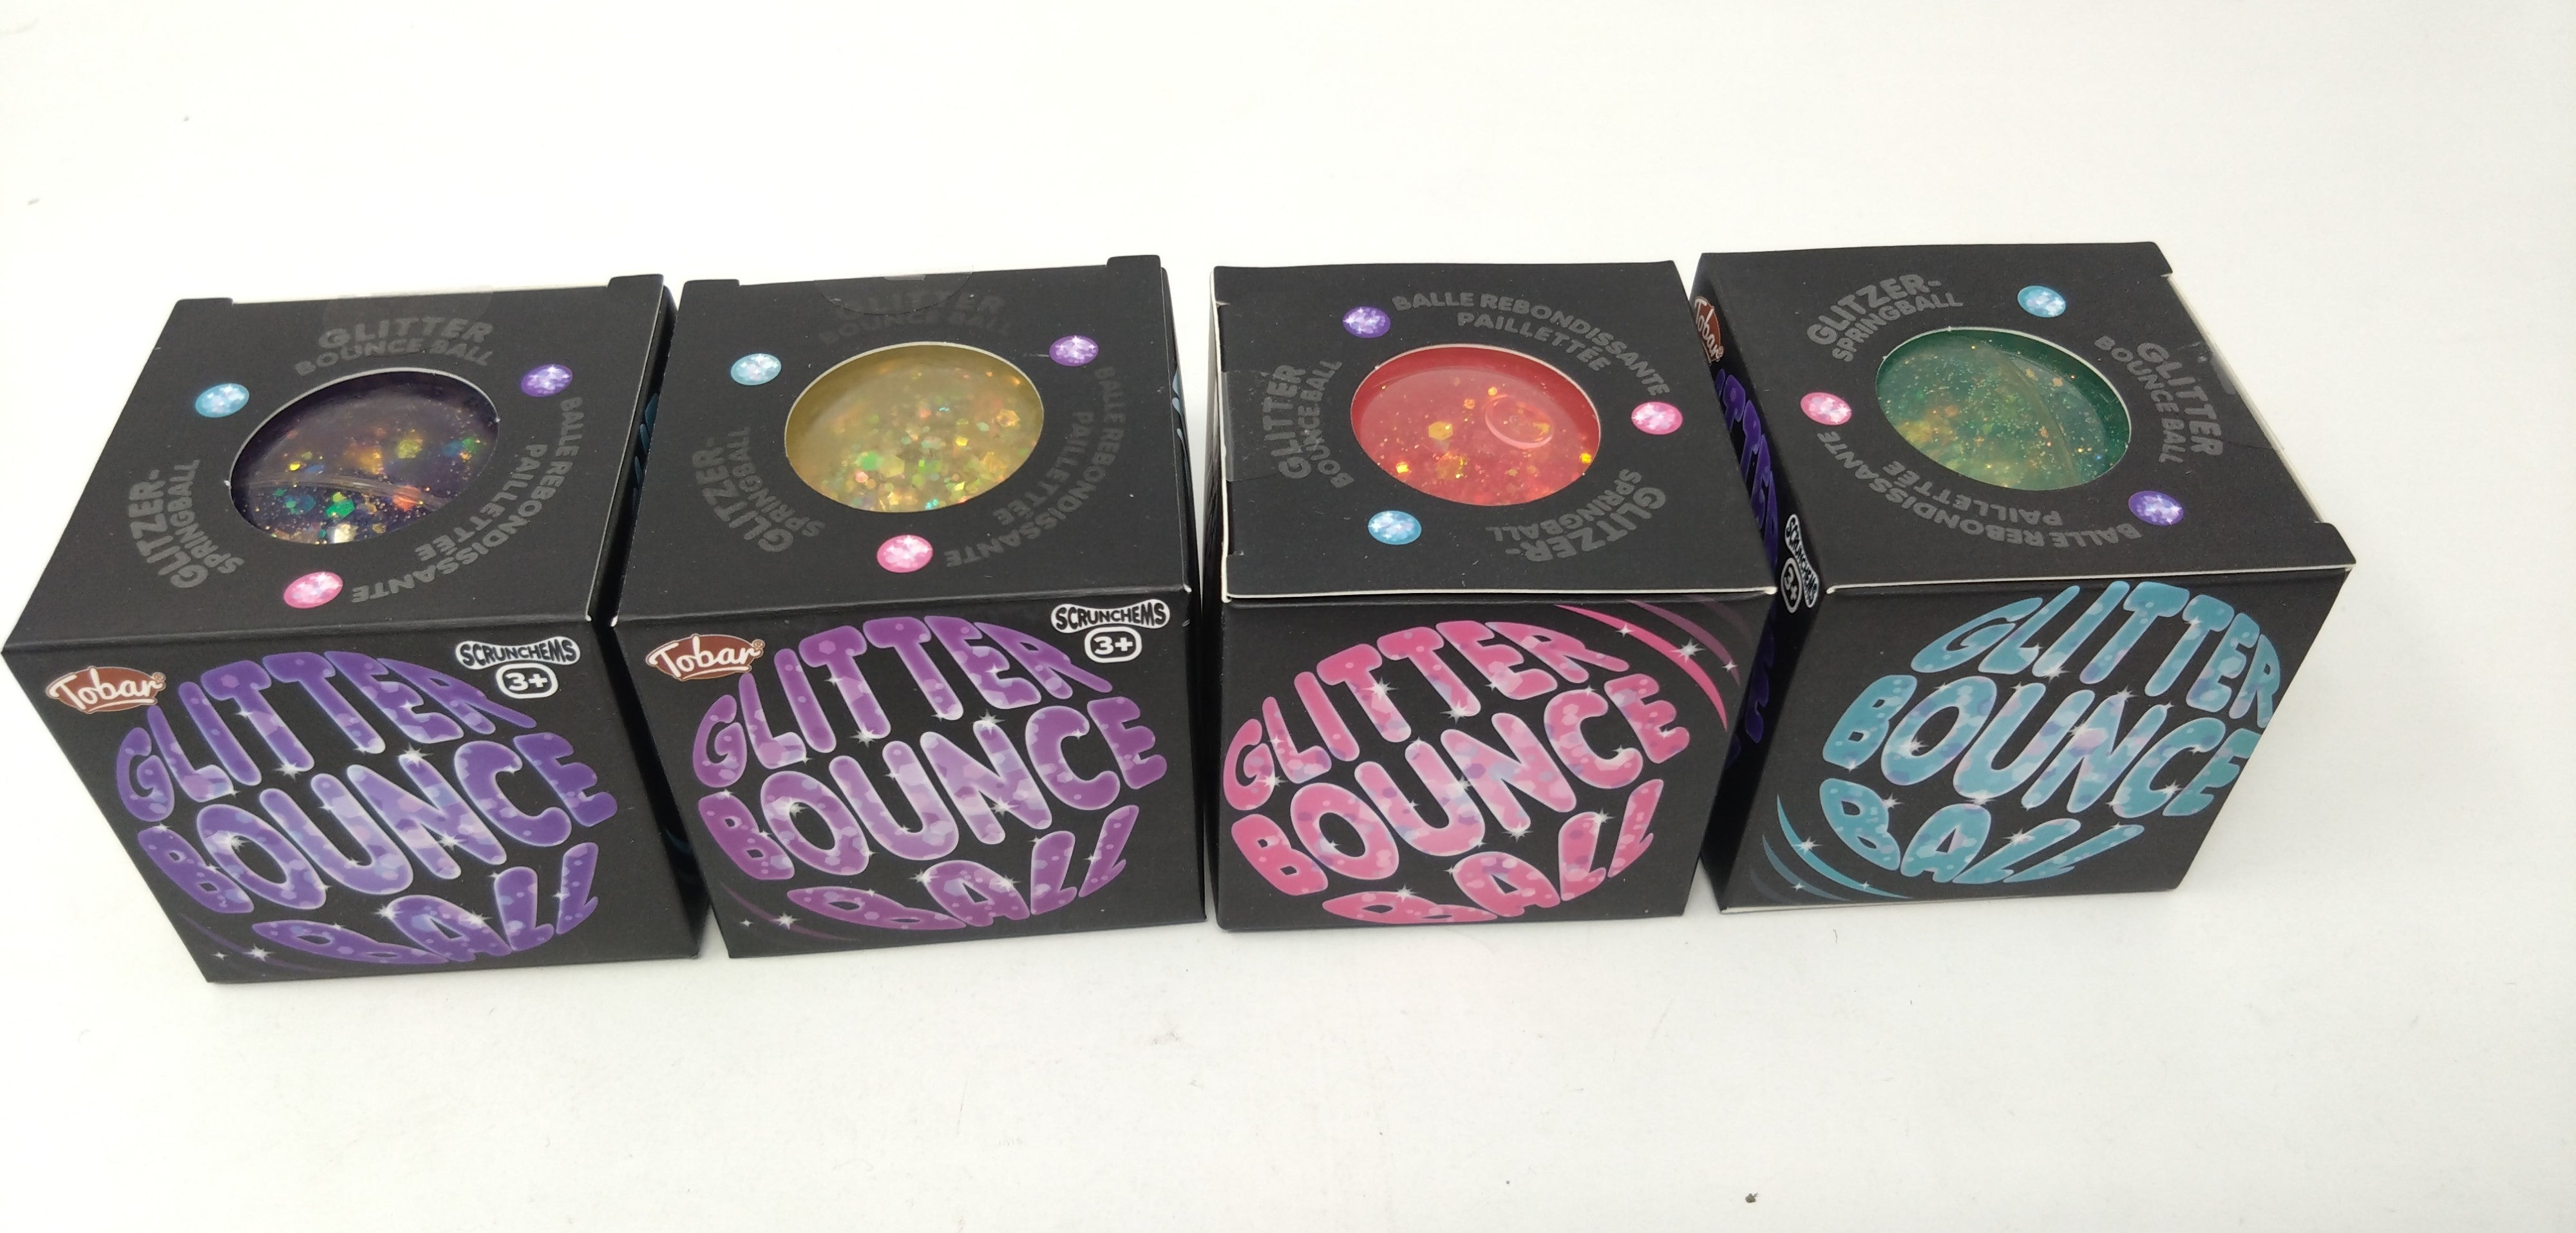 Scrunchems Glitter Bounce Ball